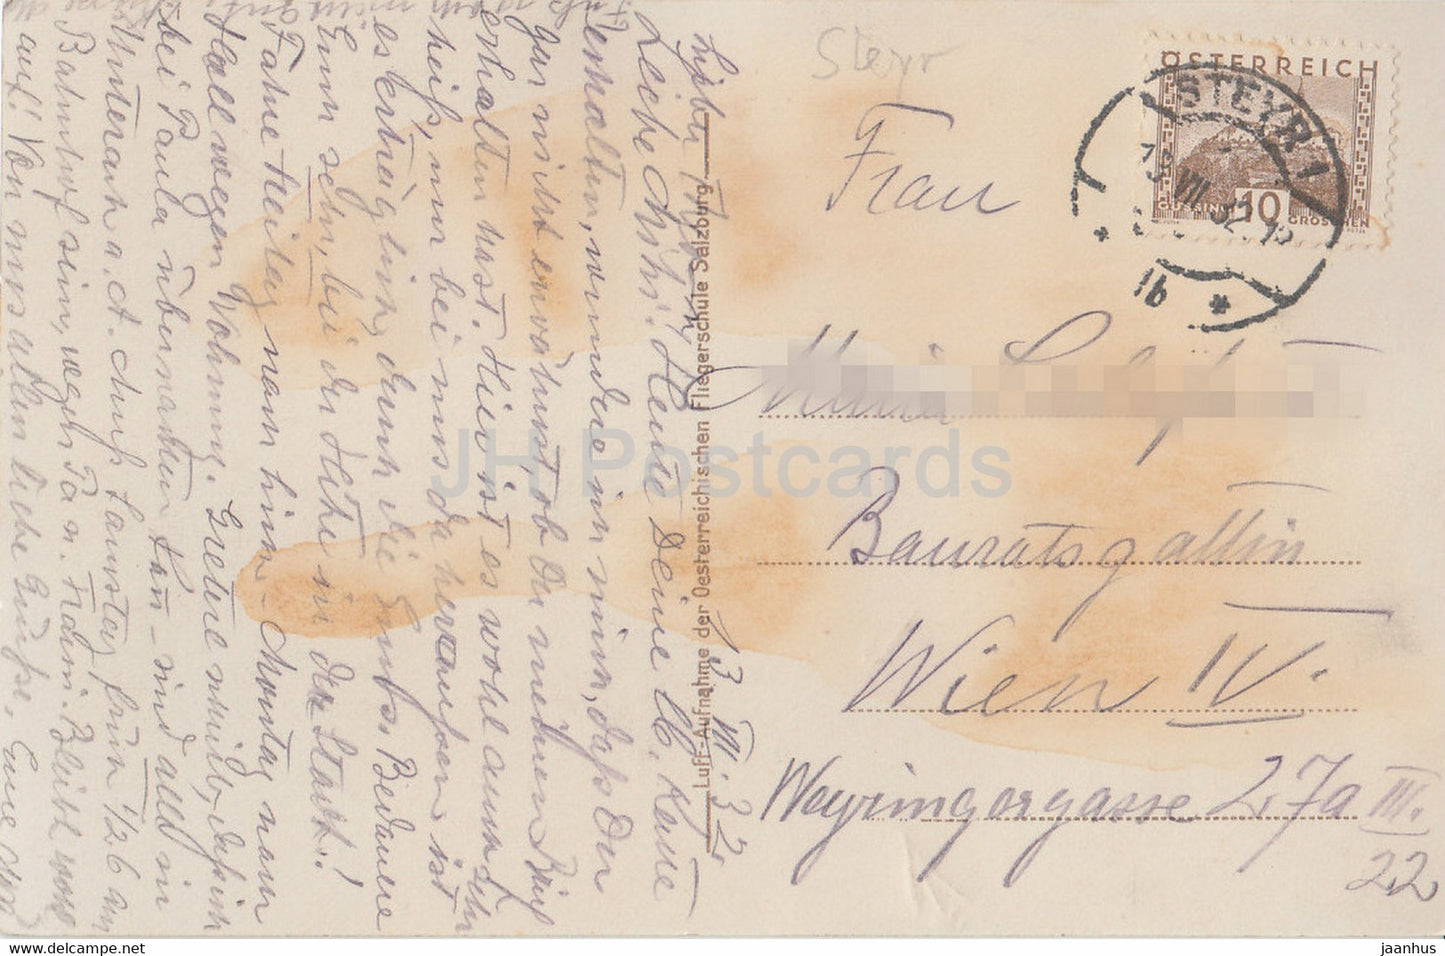 Steyr - Fliegeraufnahme 384 - alte Postkarte - 1932 - Österreich - gebraucht